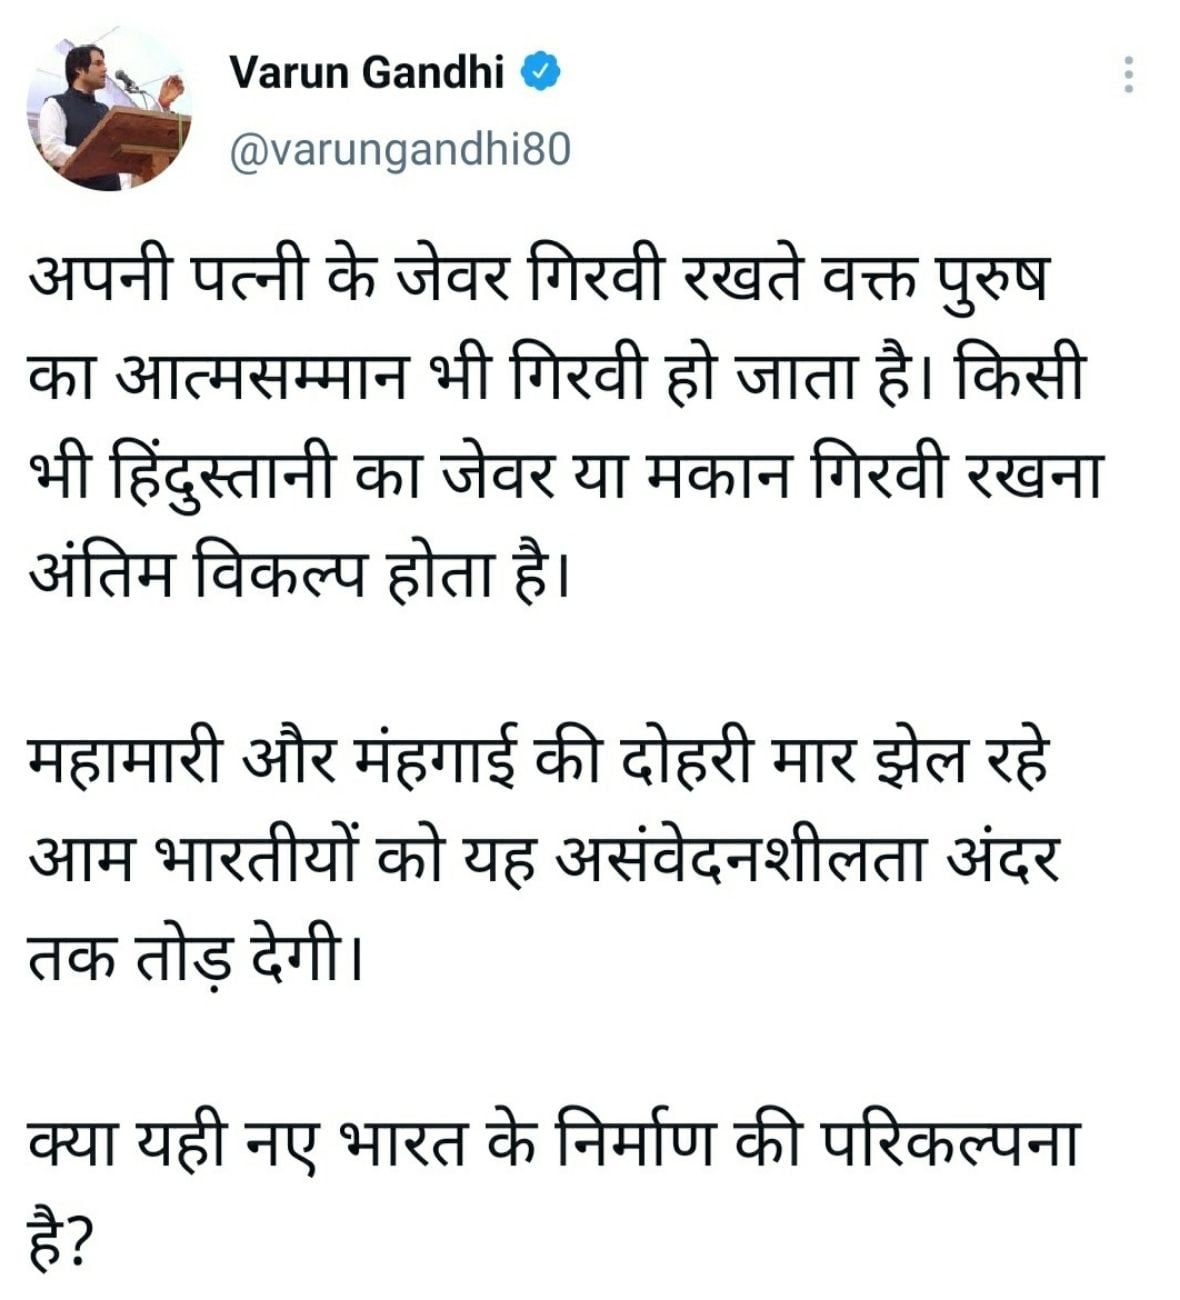 Varun Gandhi